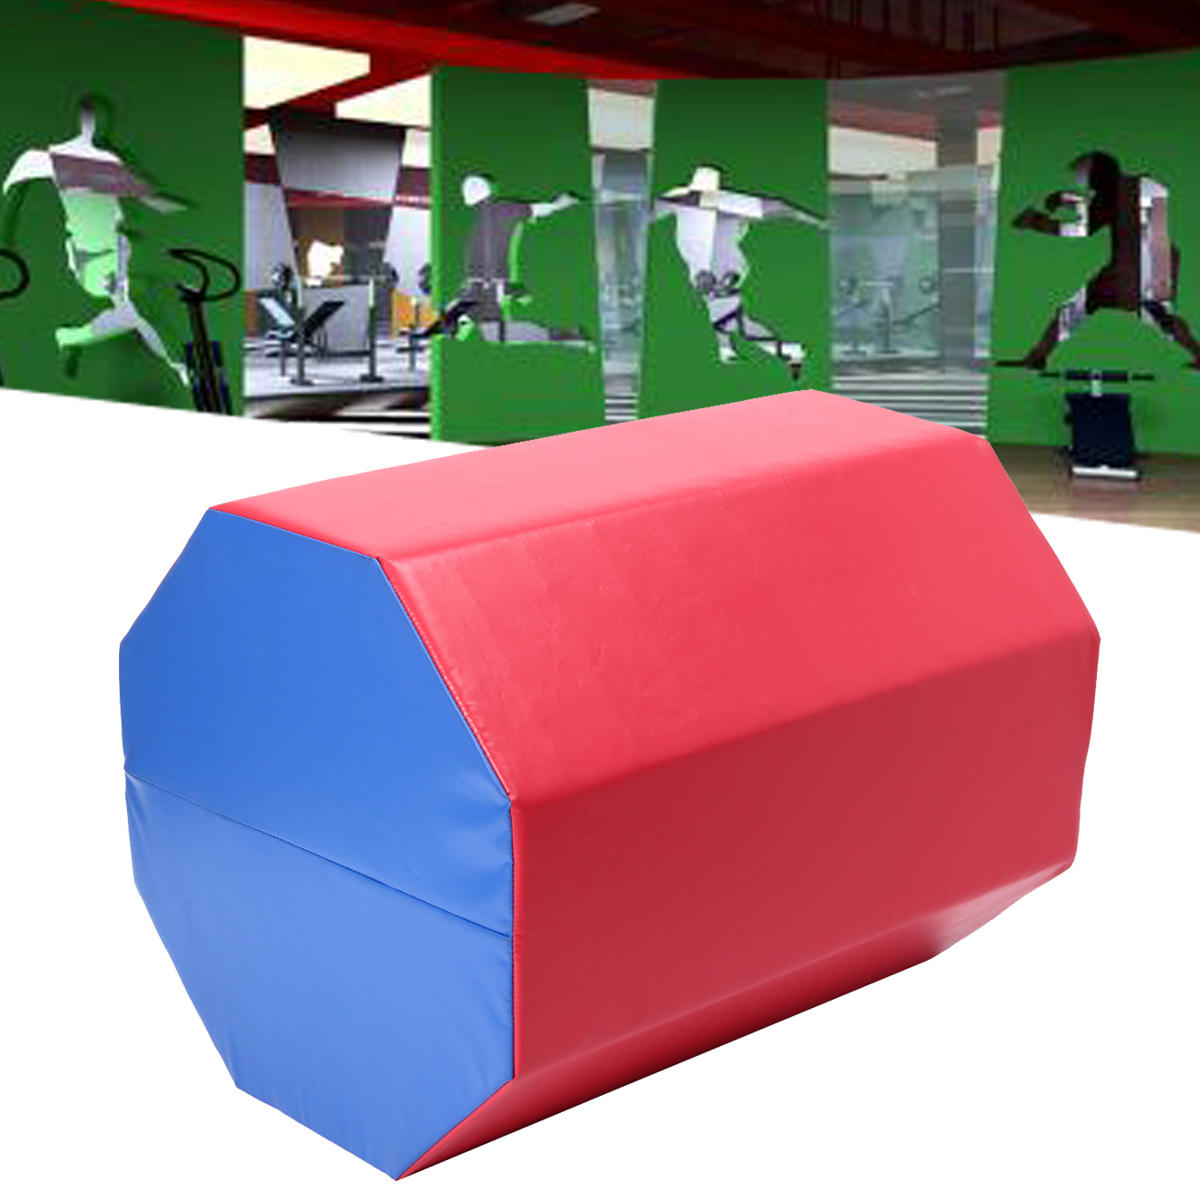 23.6×23.6×30.3インチのオクタゴナルジャンプボックススキップ体操スポーツトレーニングエクササイズパッドエアトラックマット